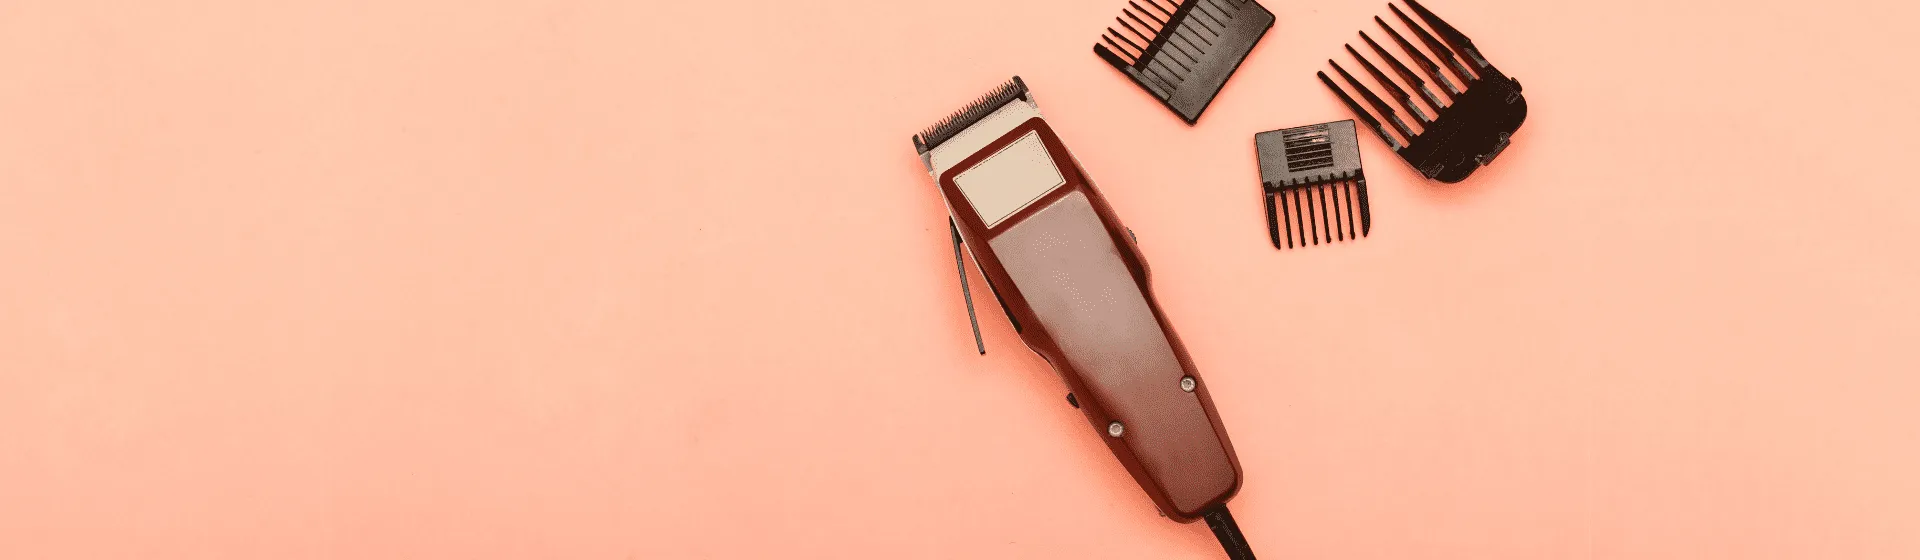 Melhor máquina de cortar cabelo de 2022: 12 modelos para comprar